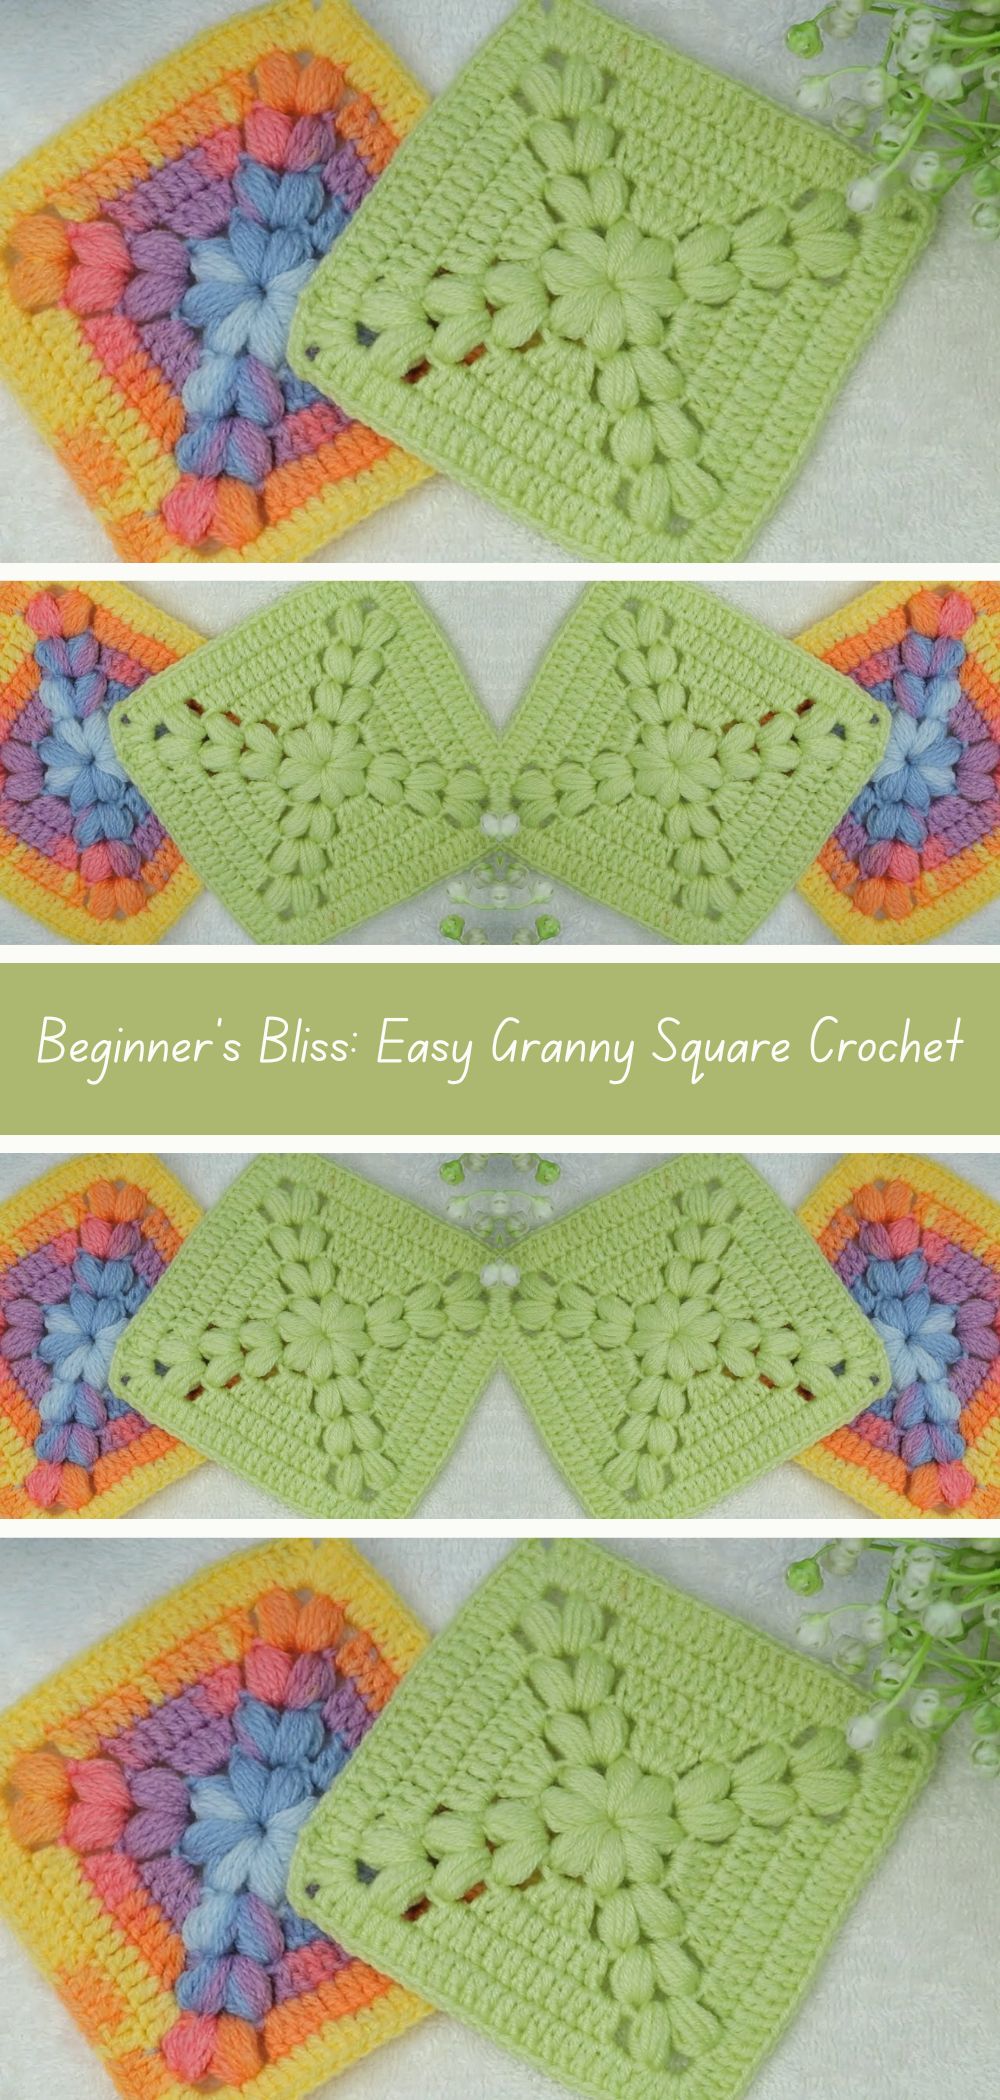 Beginner's Bliss: Easy Granny Square Crochet Tutorial